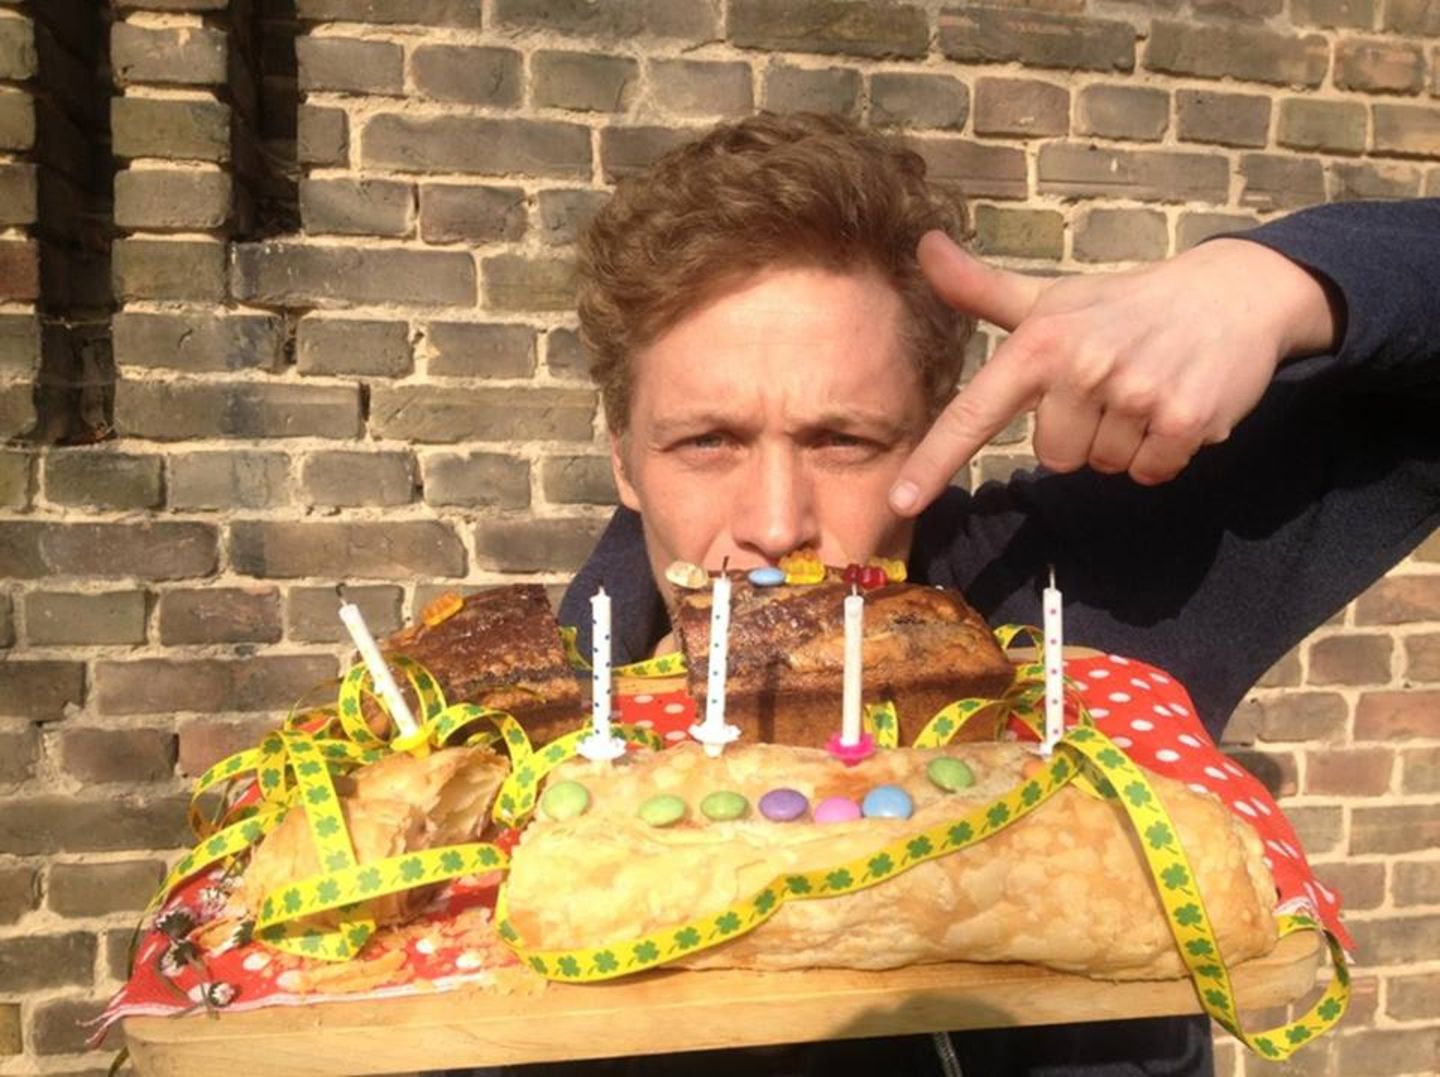 2014:  Happy Birthday! Am 11. März wird Matthias Schweighöfer 33 Jahre alt. Seinen Geburtstag feiert er auch mit seinen Fans auf Facebook und veröffentlicht dieses Bild mit Riesen-Kuchen.